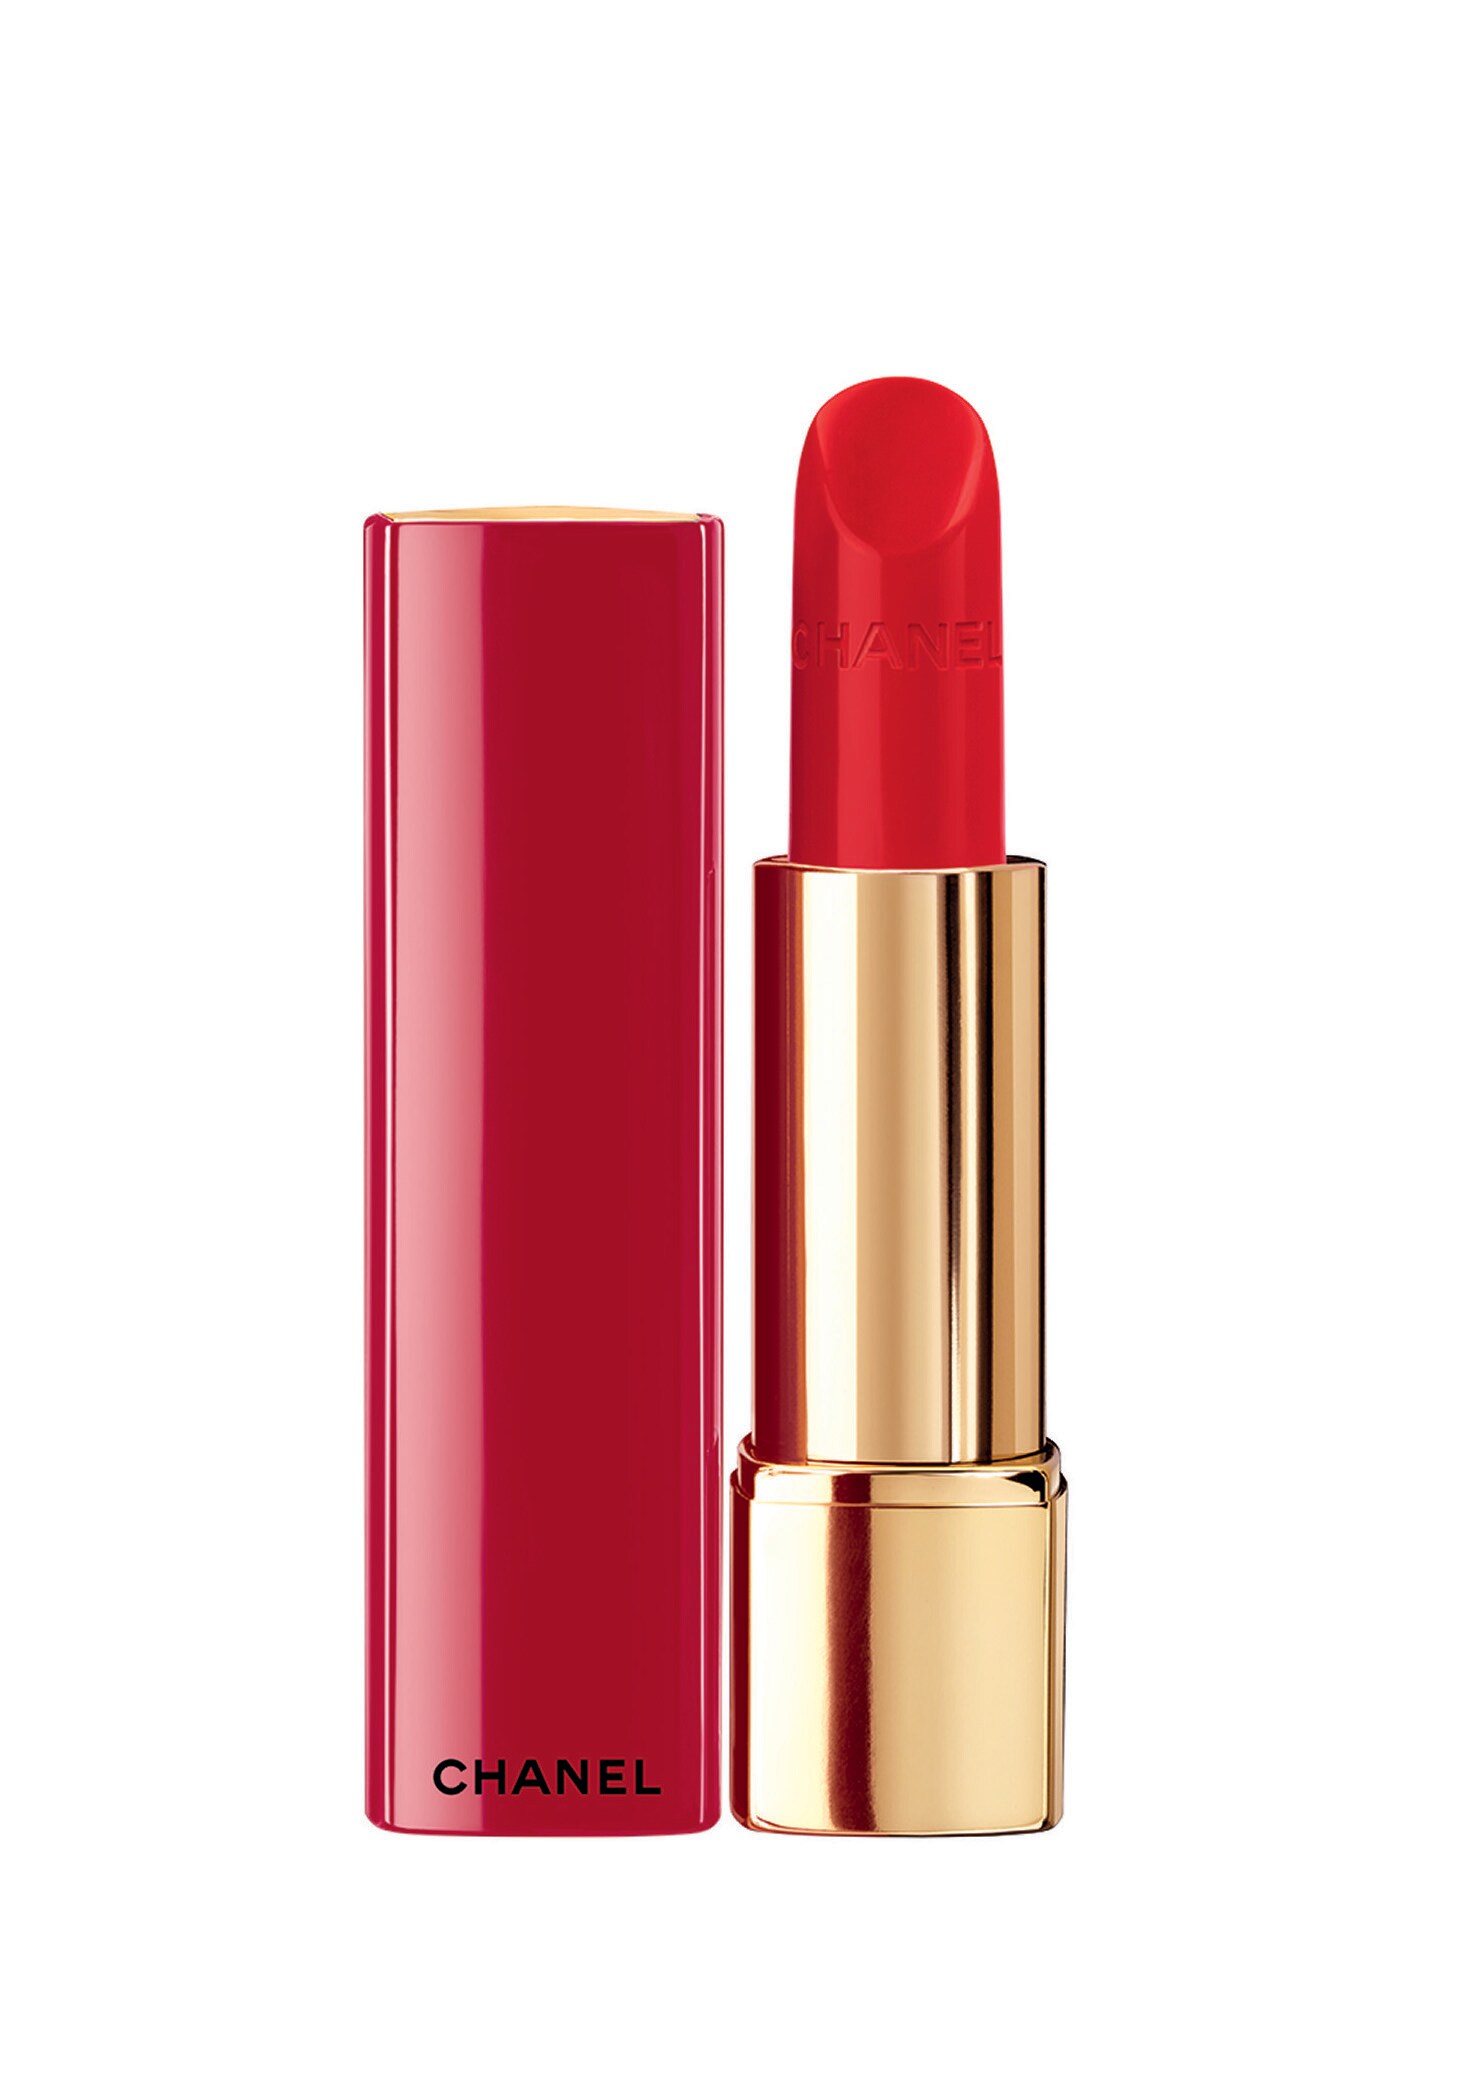 El labial perfecto para tu primera cita con un chico: Rouge Allure 667 Nº 4 de Chanel